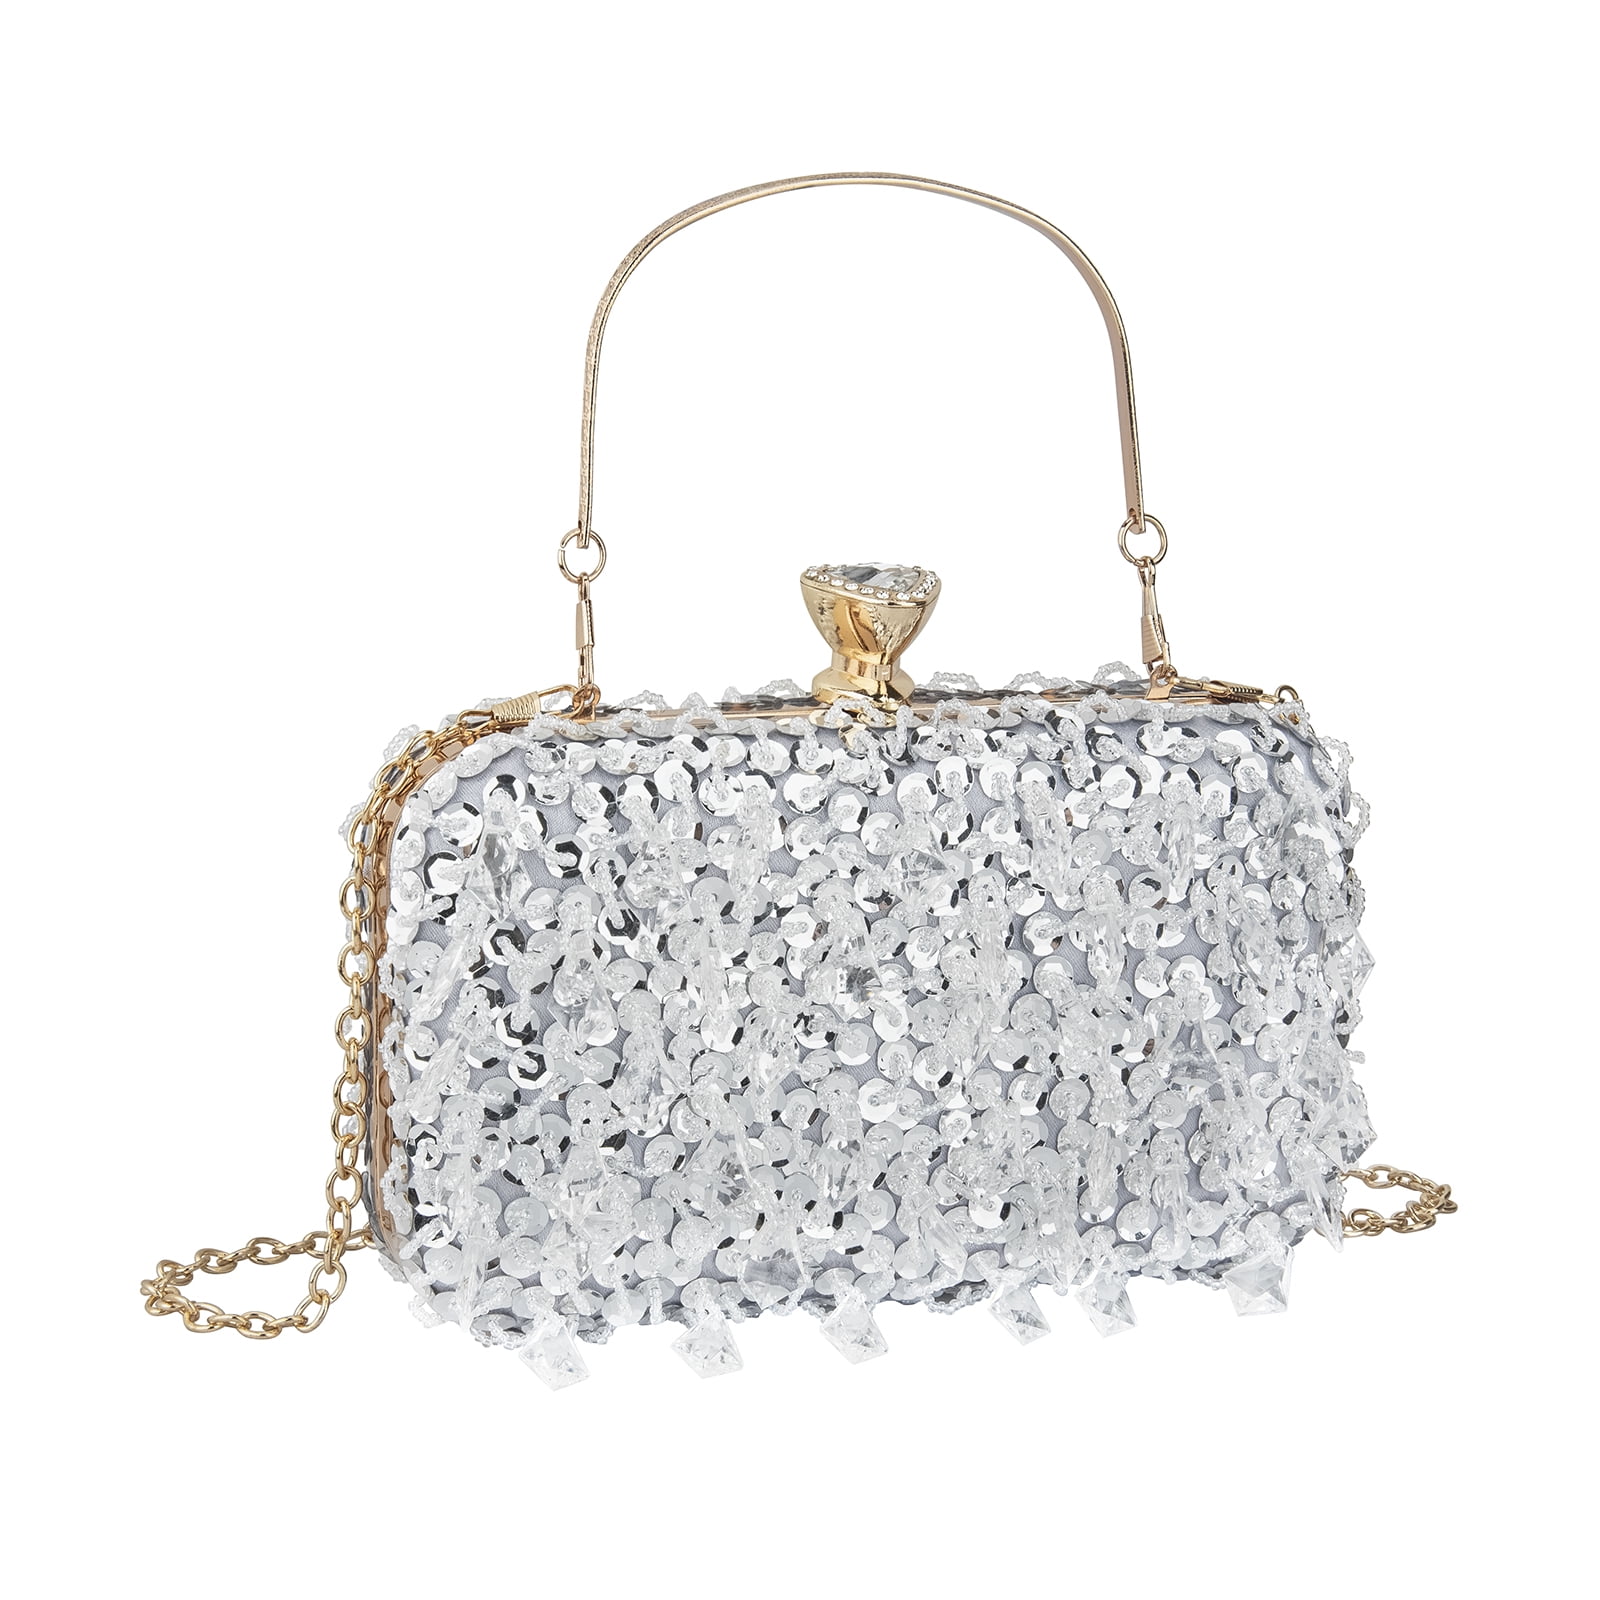 YYIHER Women's Evening Handbags Pearl Clutch Purse Beaded bag Bridal Clutch  wedding Purse